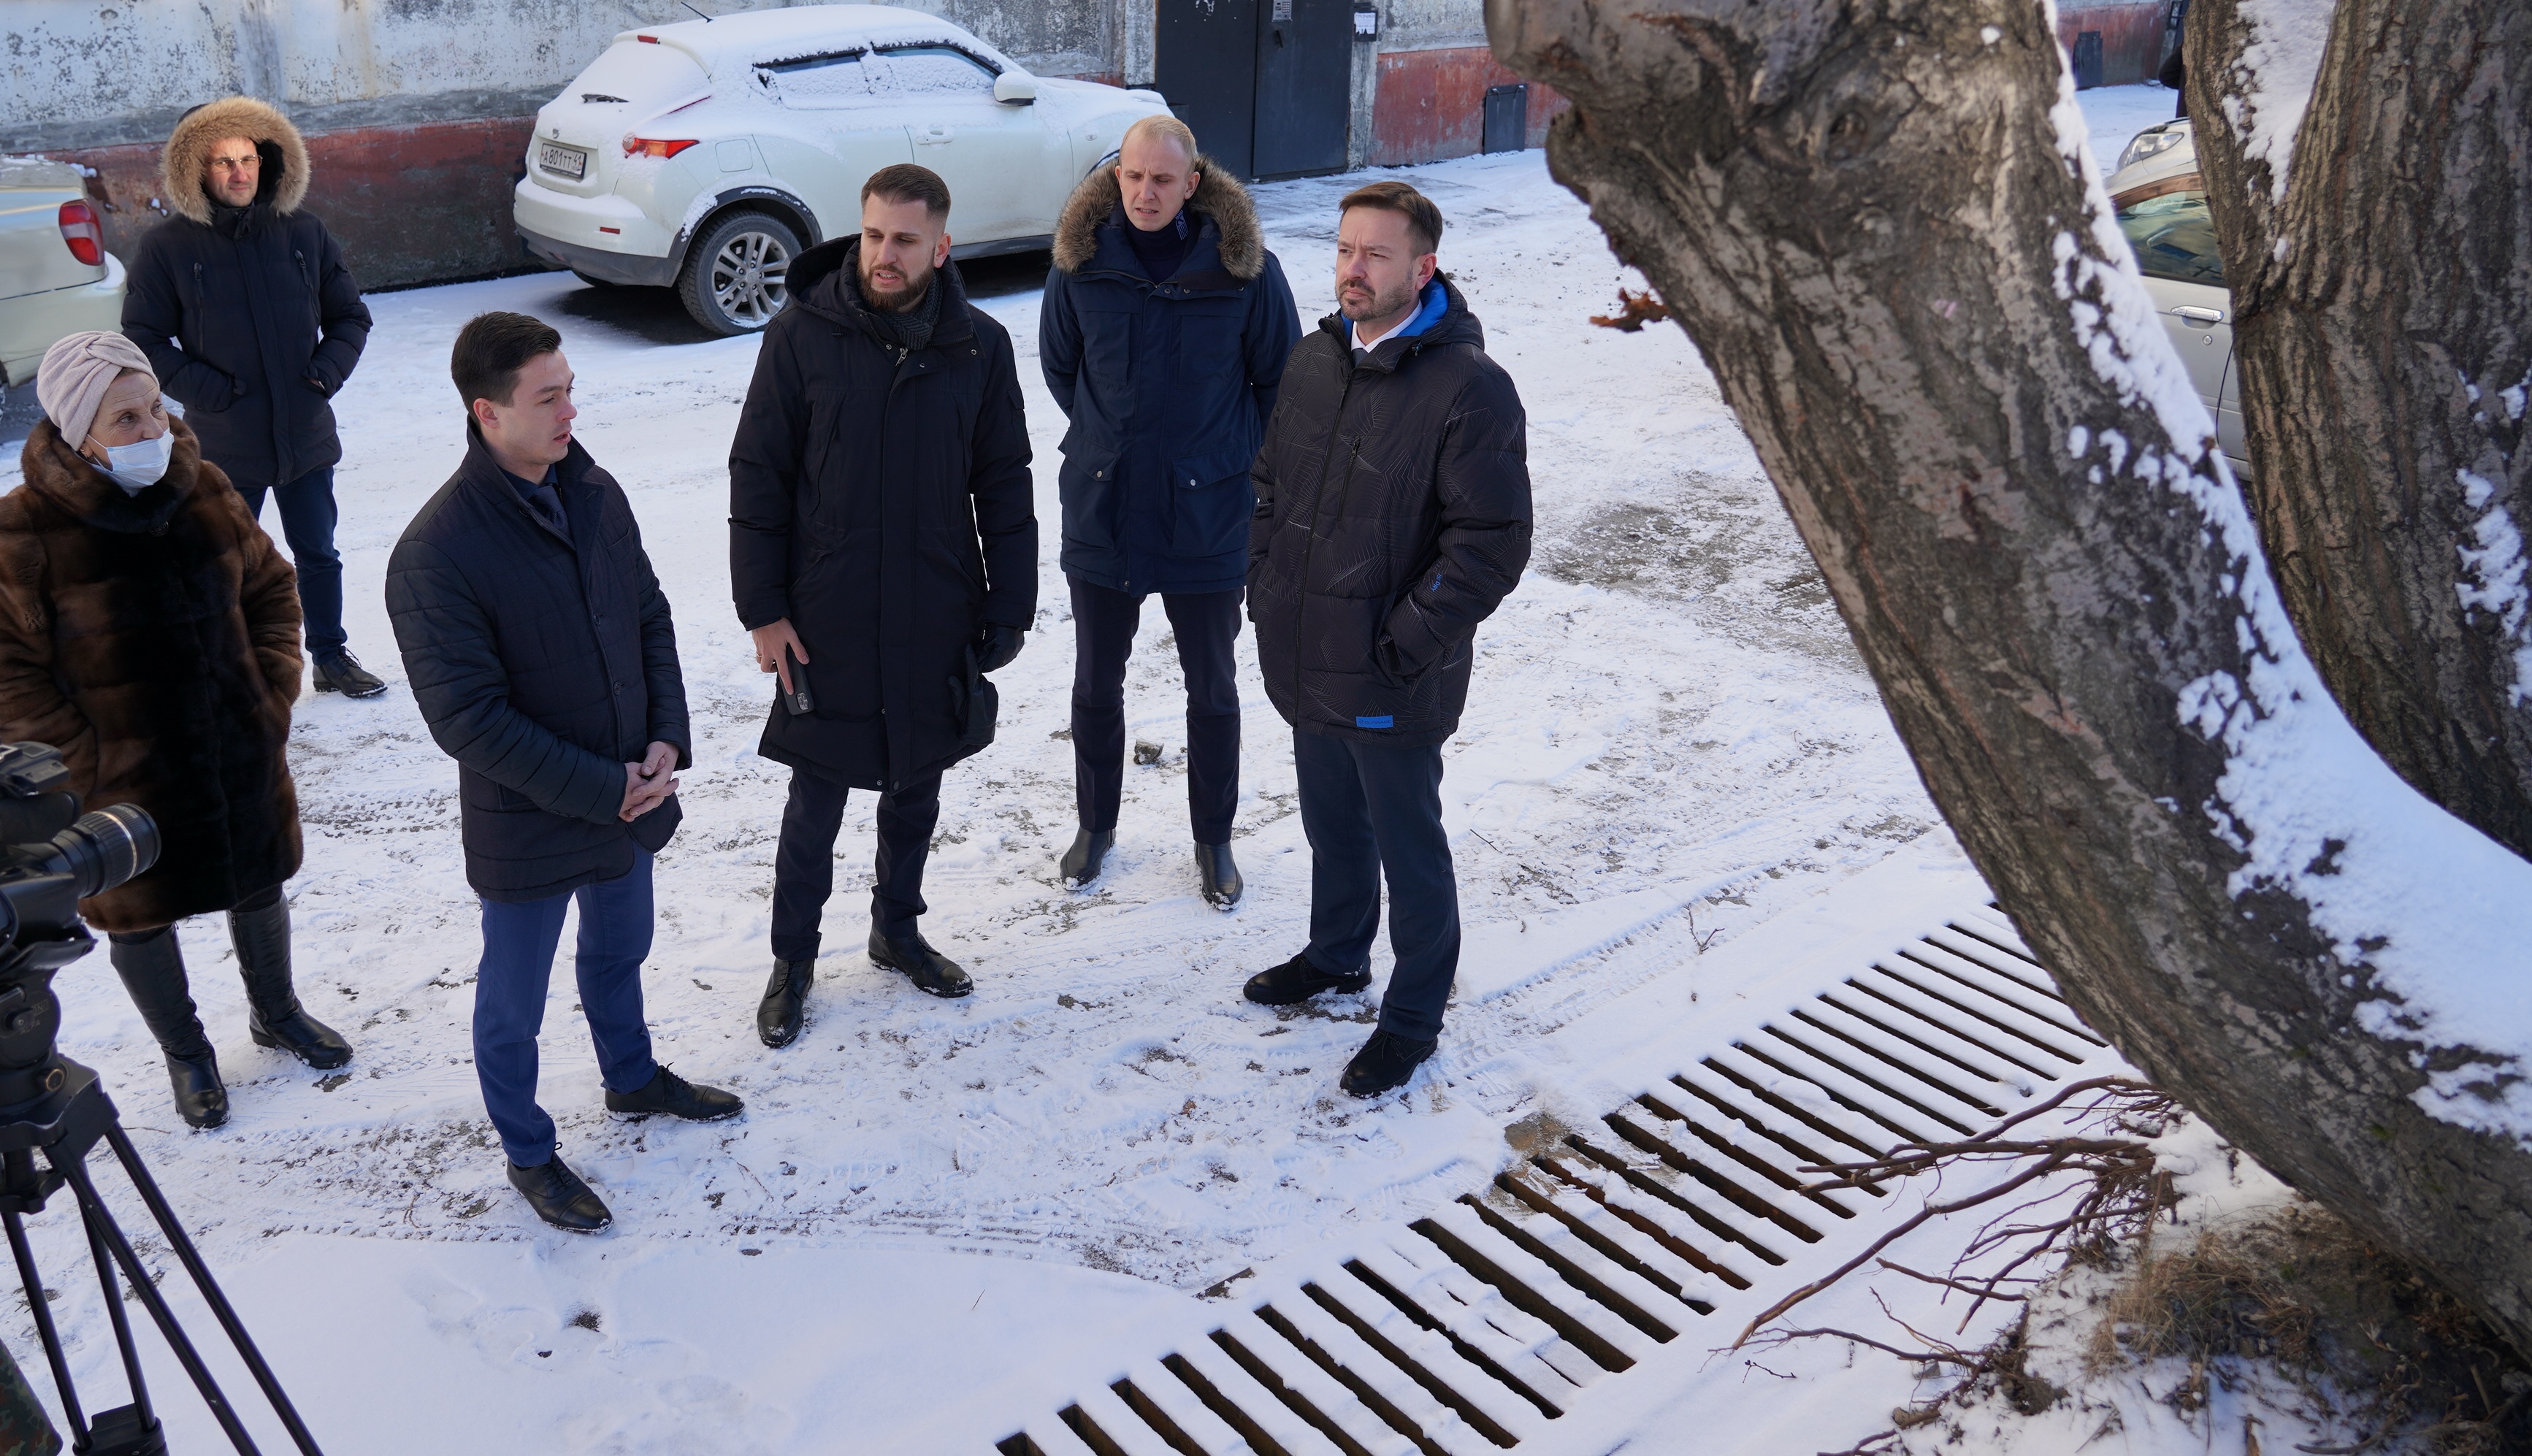 Обустройство новой ливнёвки и будущее озеленение по ул. Курчатова обсудили на встрече, которую провел Глава города Константин Брызгин